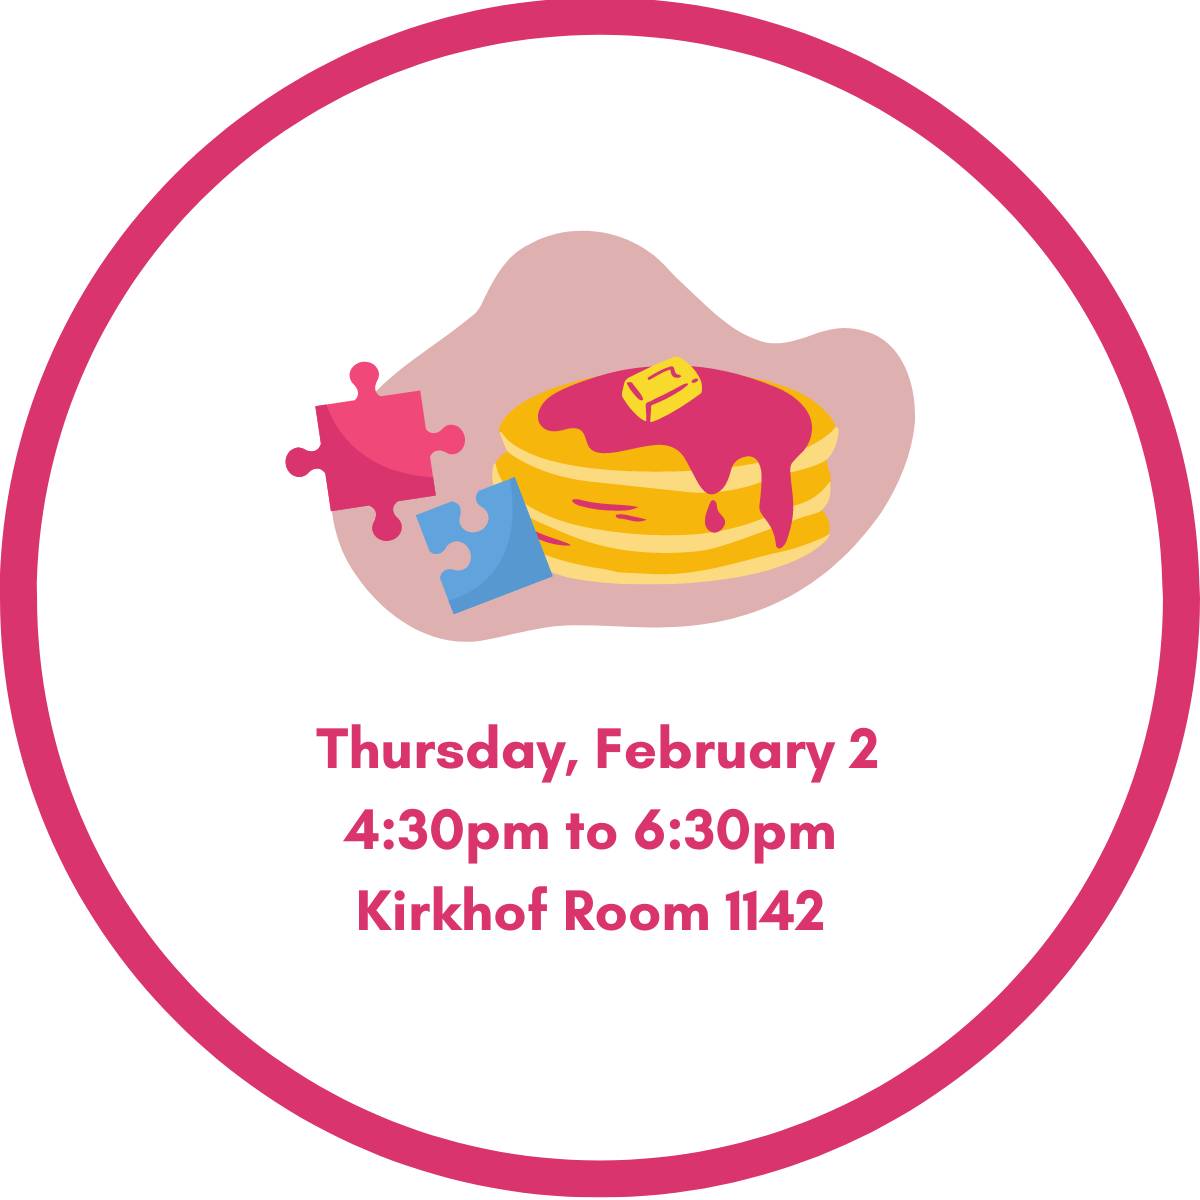 Pink Brunch & Game Night, Thursday, February 2nd. Kirkhof Room 1142